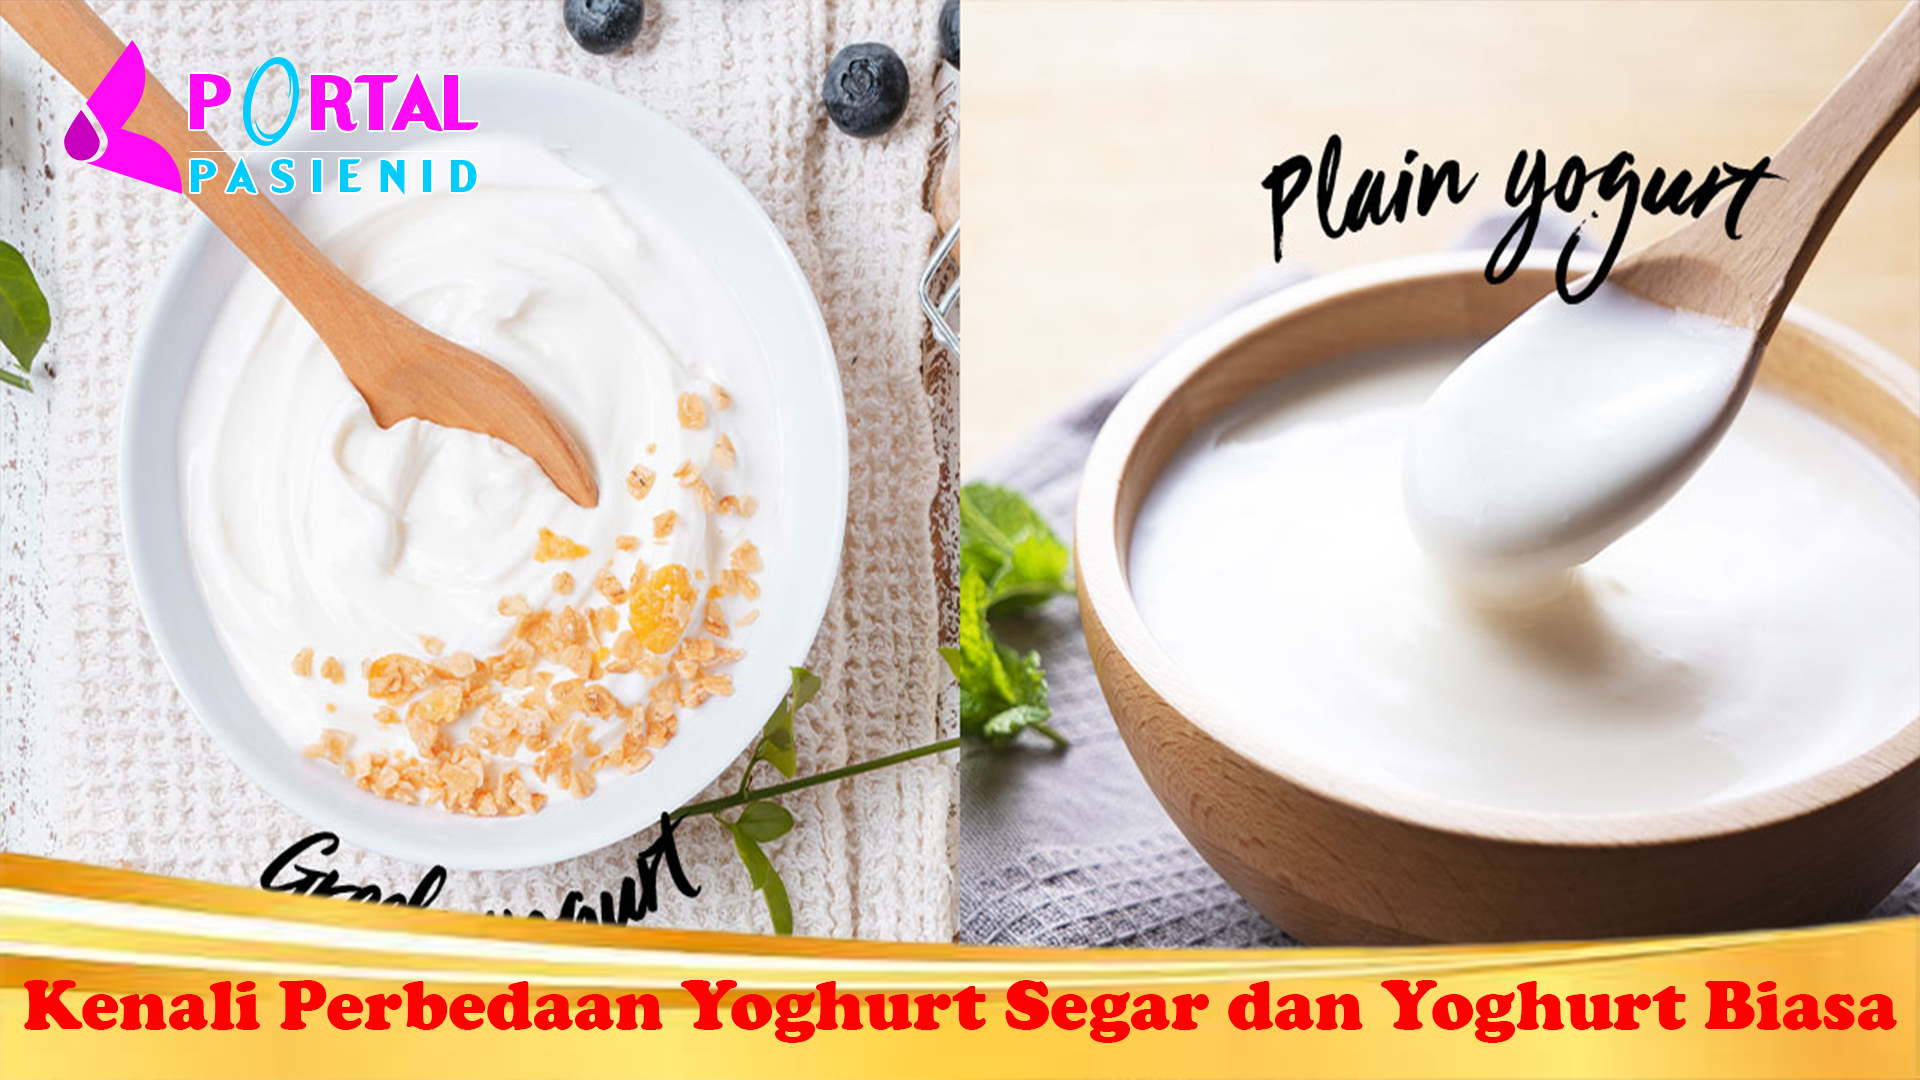 Kenali Perbedaan Yoghurt Segar dan Yoghurt Biasa